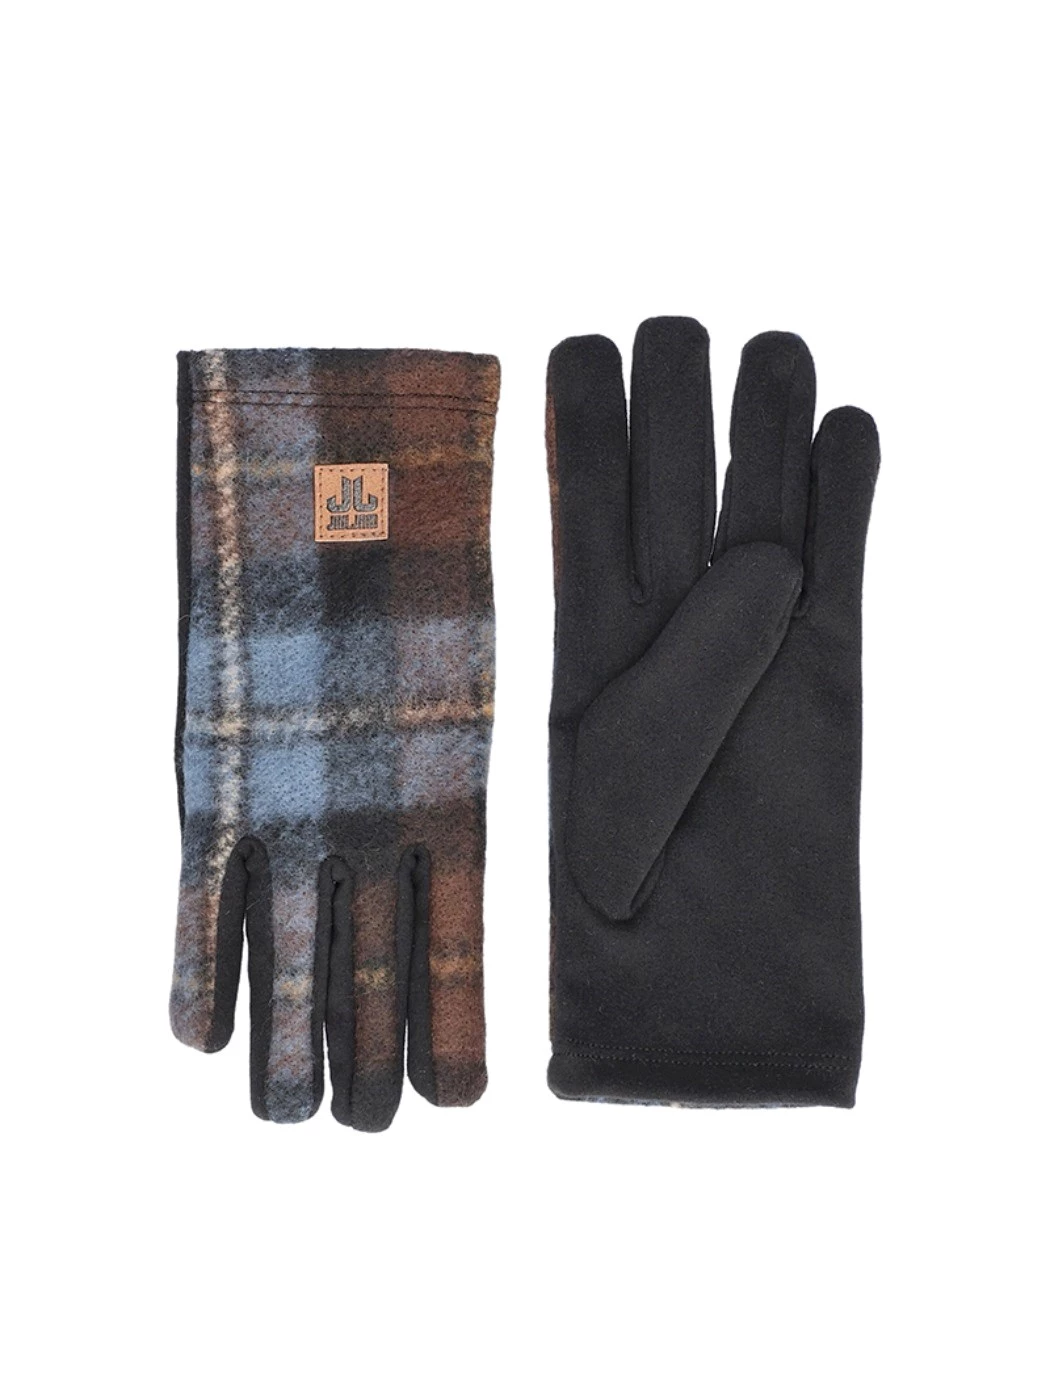 Mirage Scottish Glove